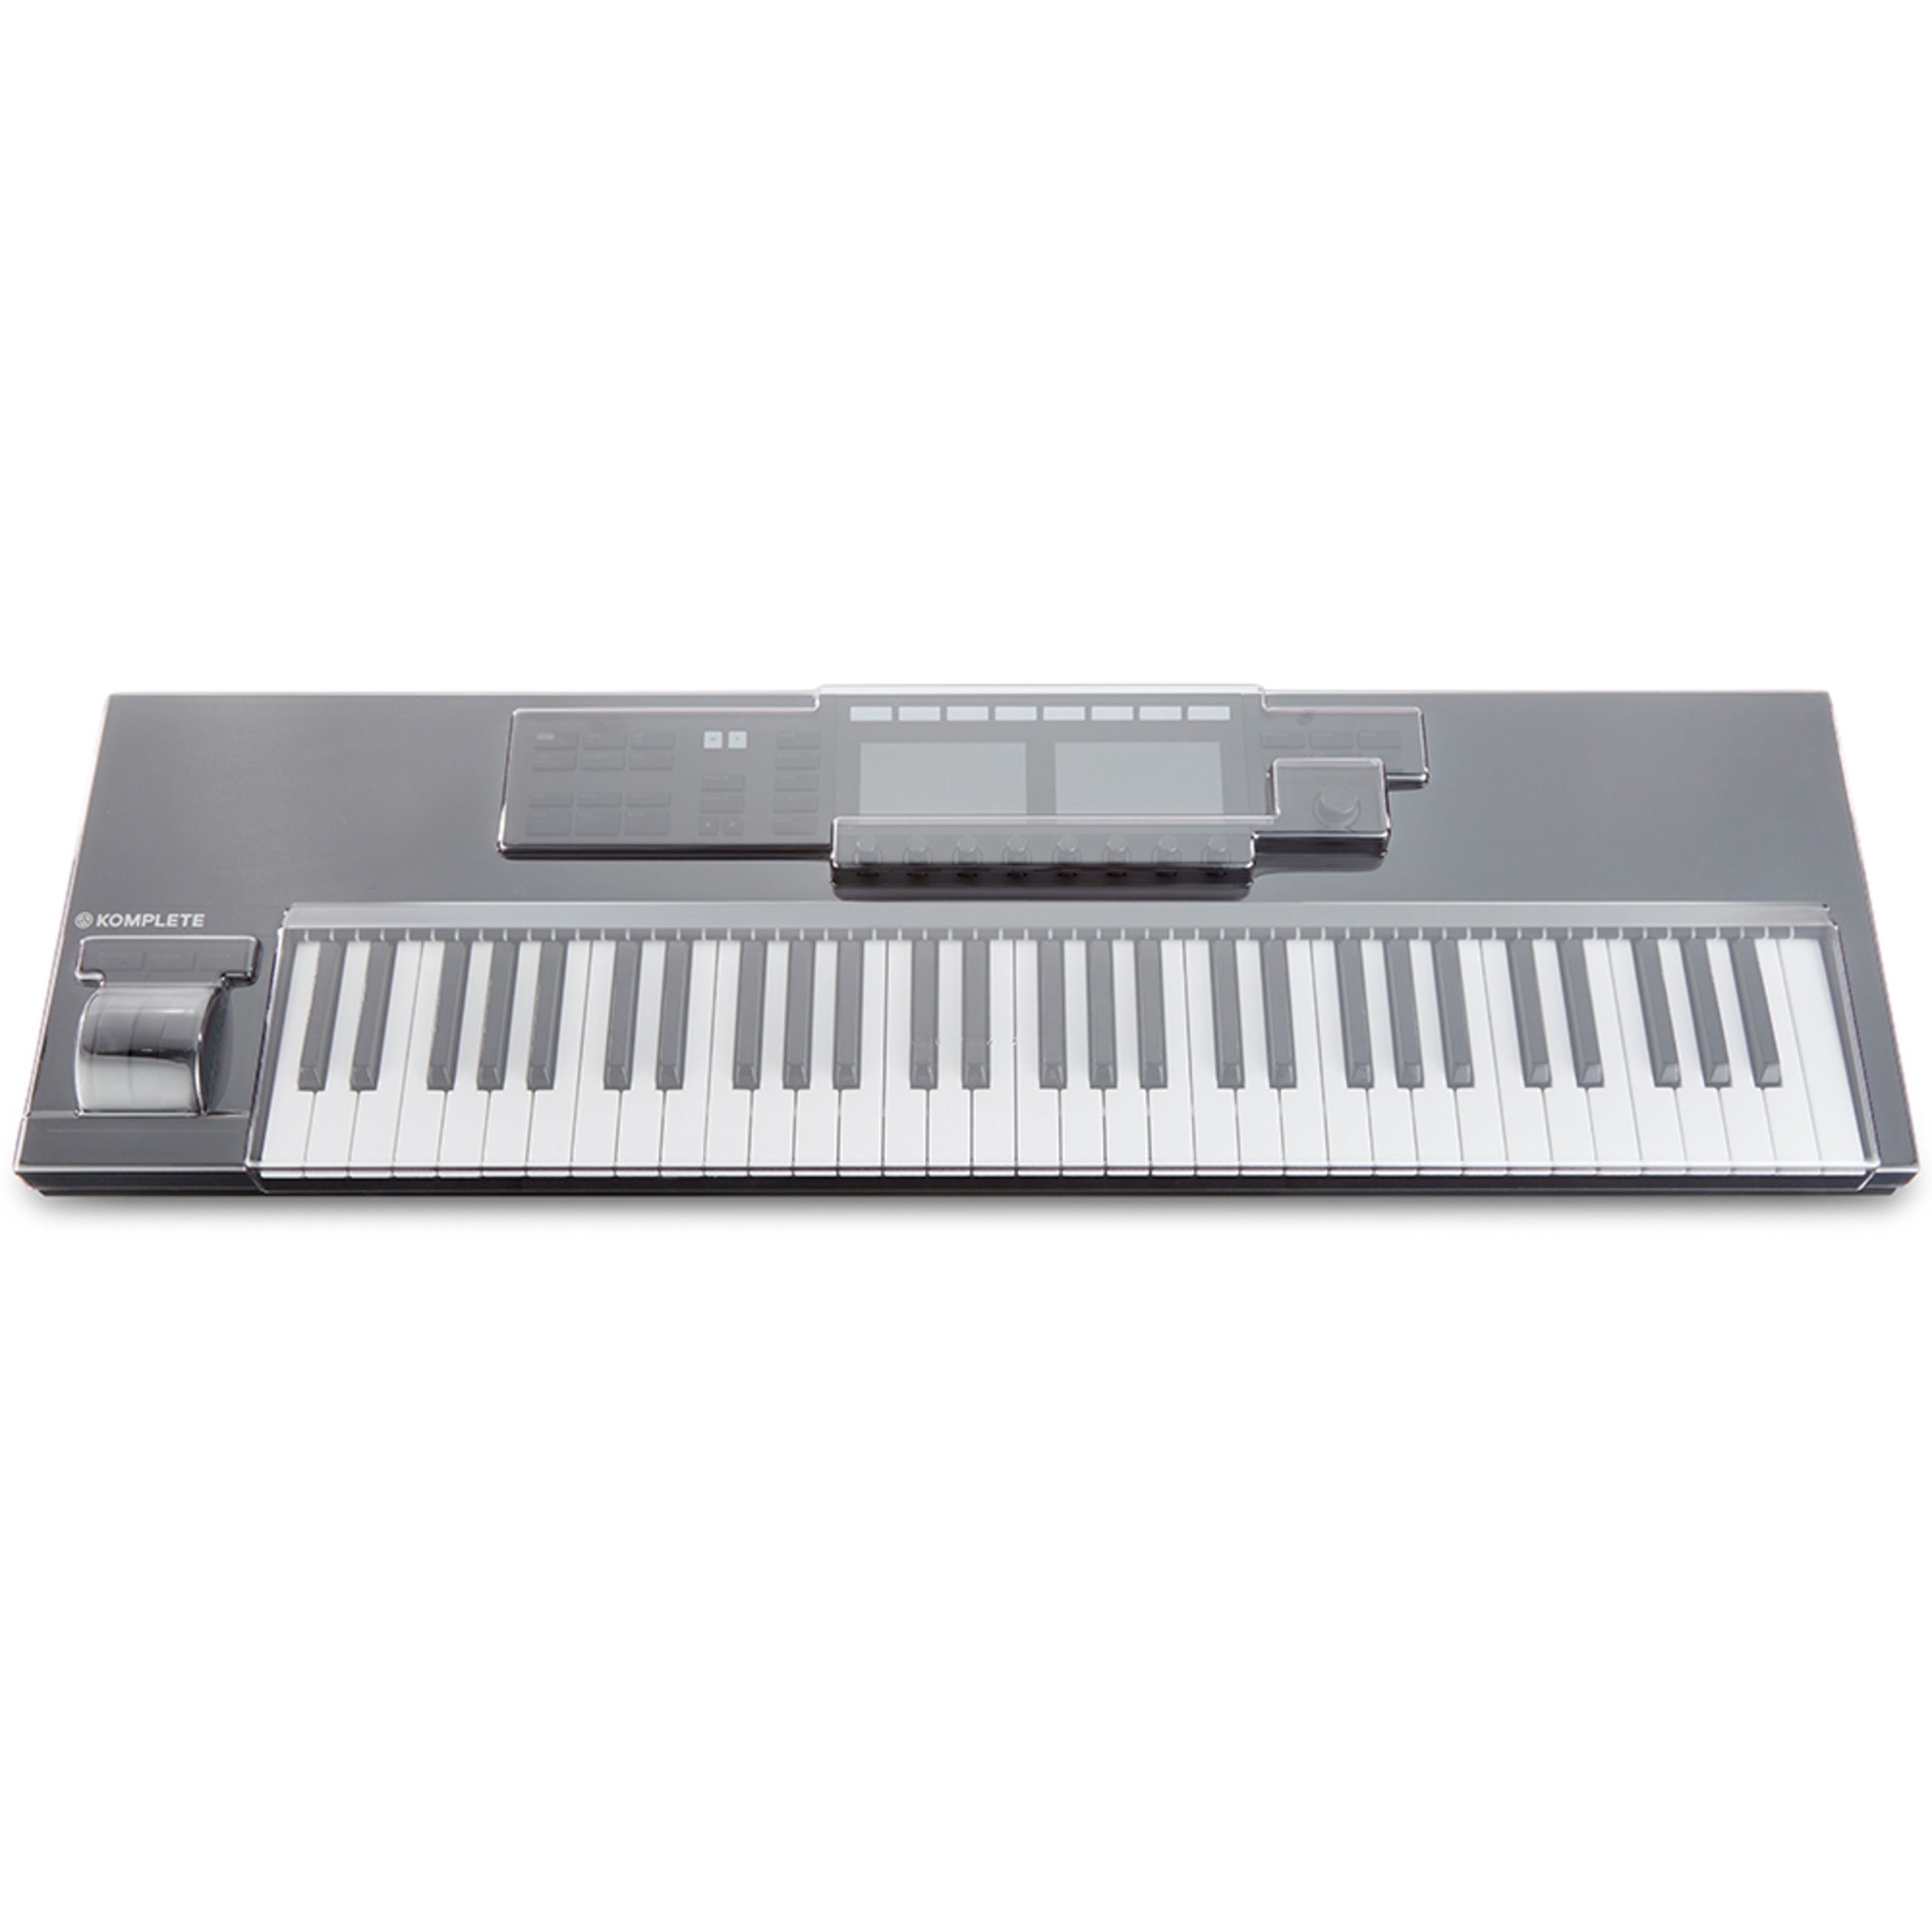 Decksaver Spielzeug-Musikinstrument, NI Kontrol S61 Cover - MK2 für Abdeckung Keyboards